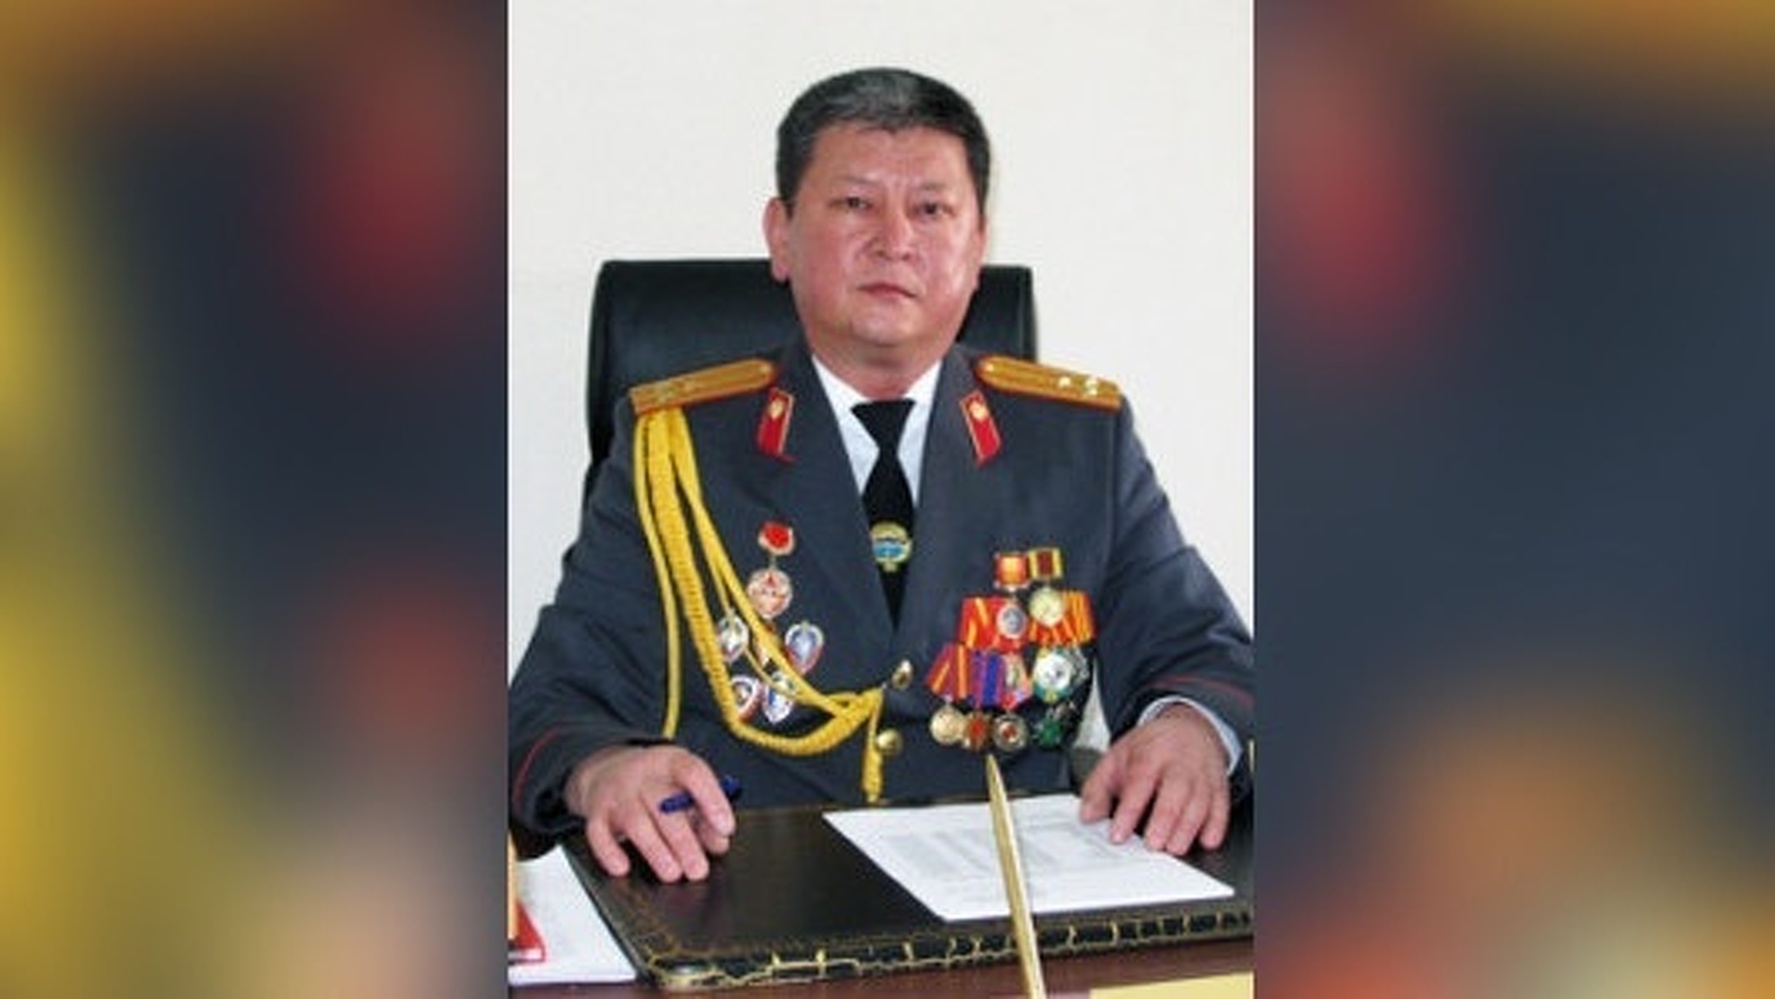 Factcheck: Полковник Памир Асанов должен уйти в отставку — Today.kg